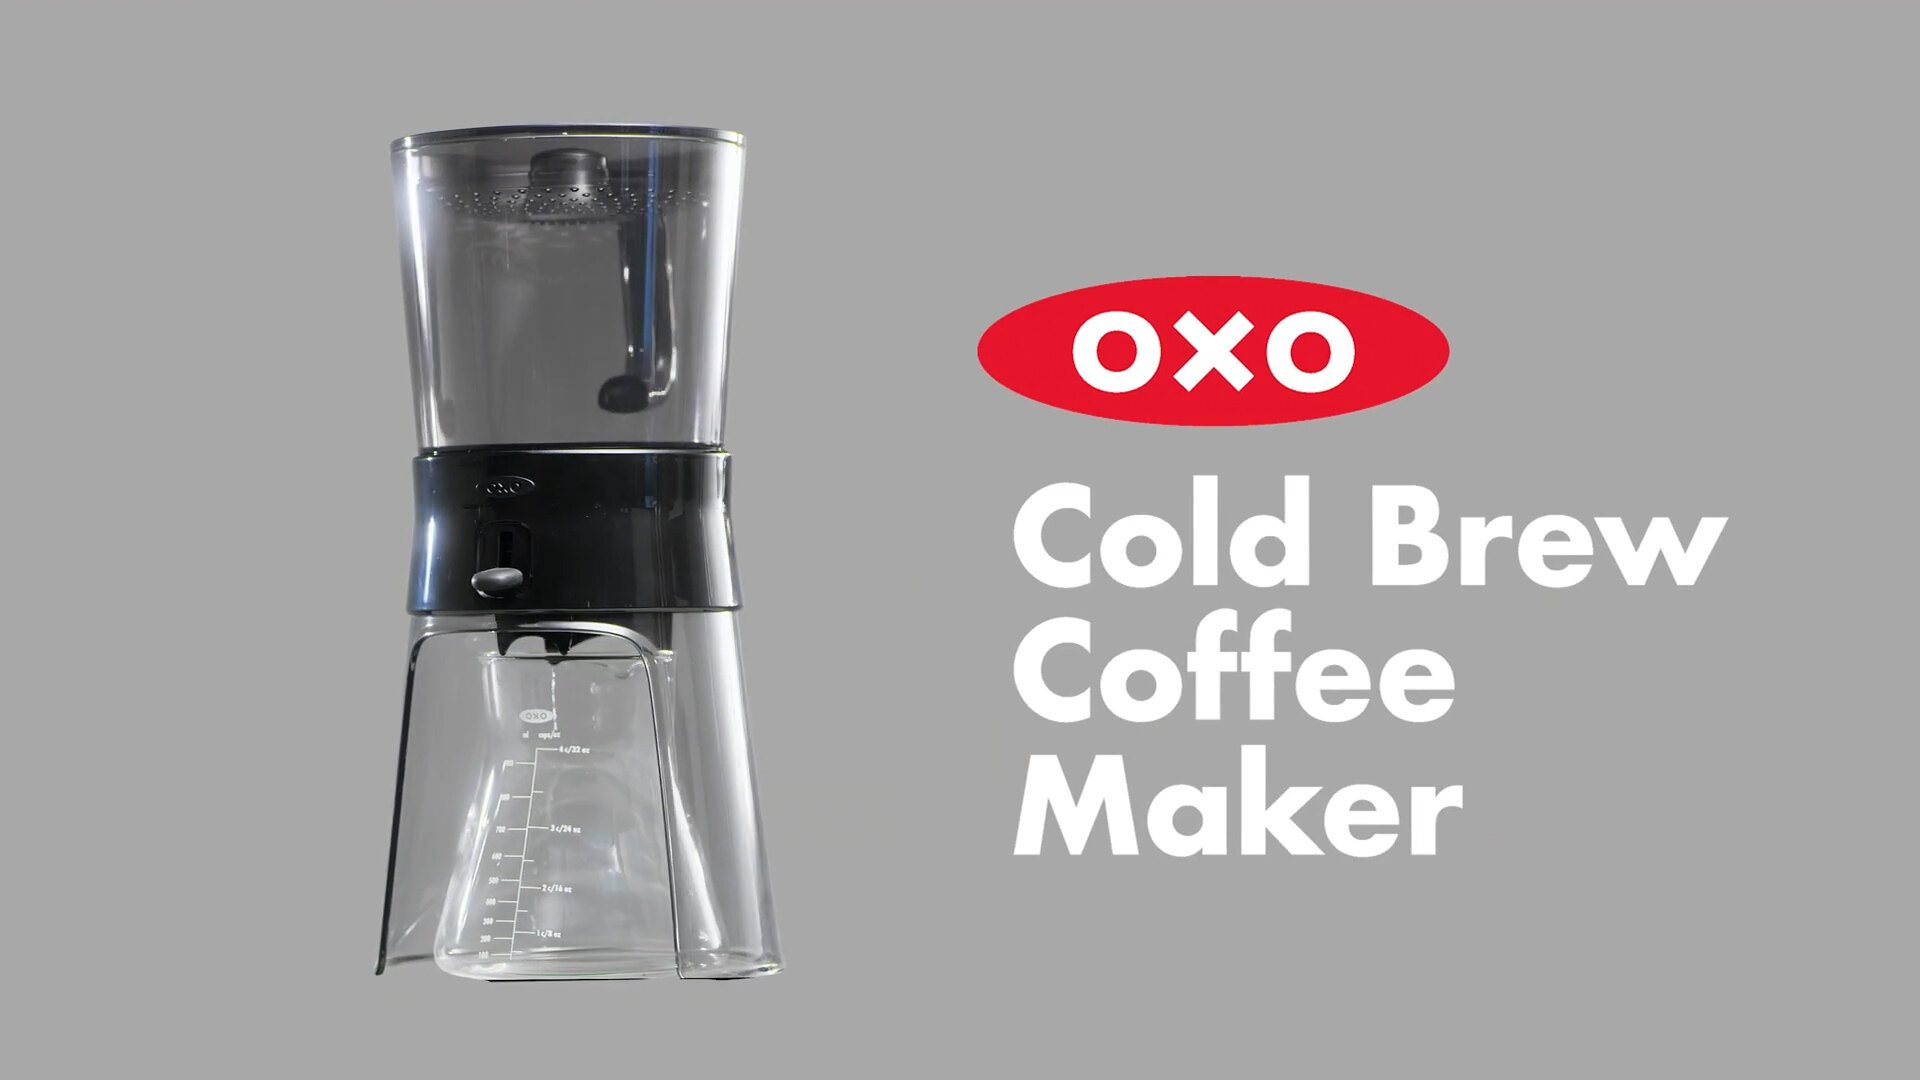 OXO 1272880 32 oz. Cold Brew Coffee Maker